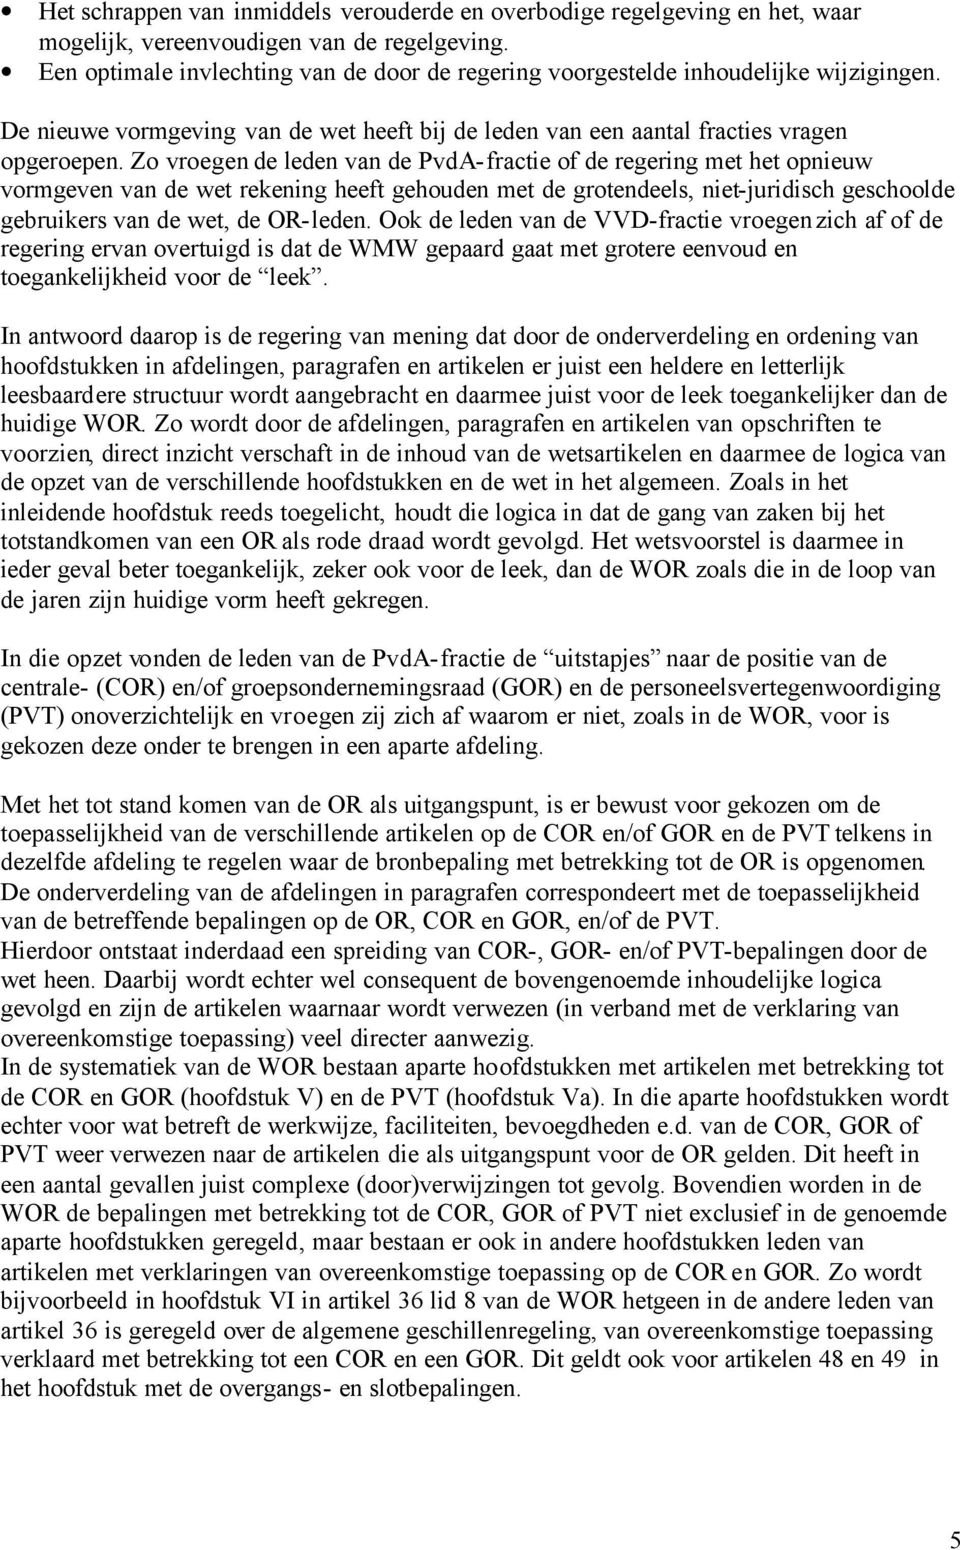 Zo vroegen de leden van de PvdA-fractie of de regering met het opnieuw vormgeven van de wet rekening heeft gehouden met de grotendeels, niet-juridisch geschoolde gebruikers van de wet, de OR-leden.